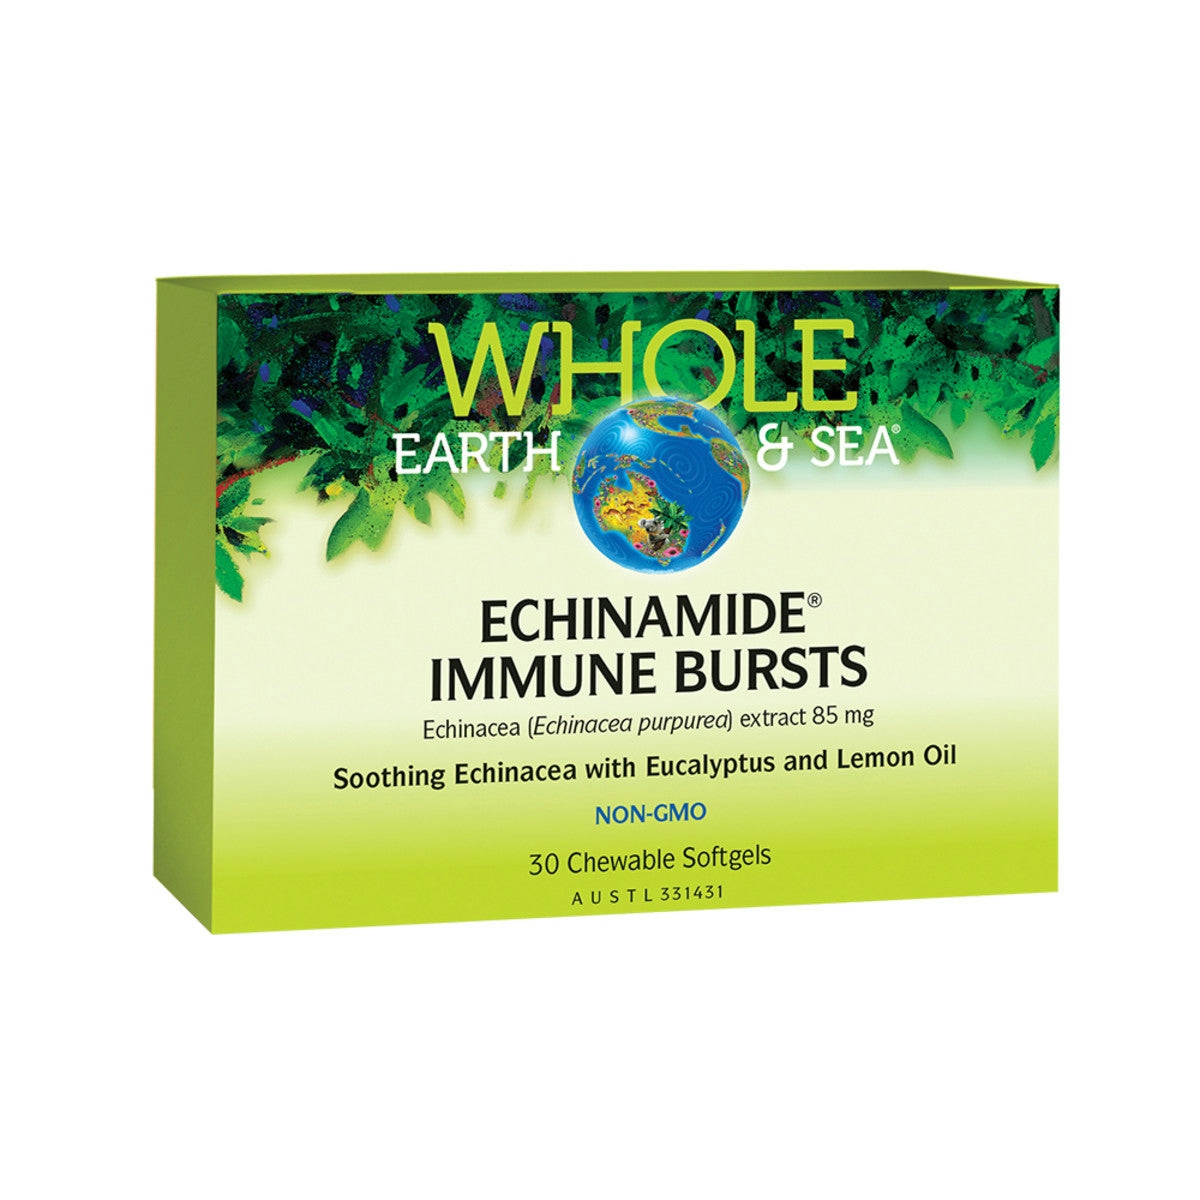 image of Whole Earth & Sea Echinamide Immune Burst 30c on white background 